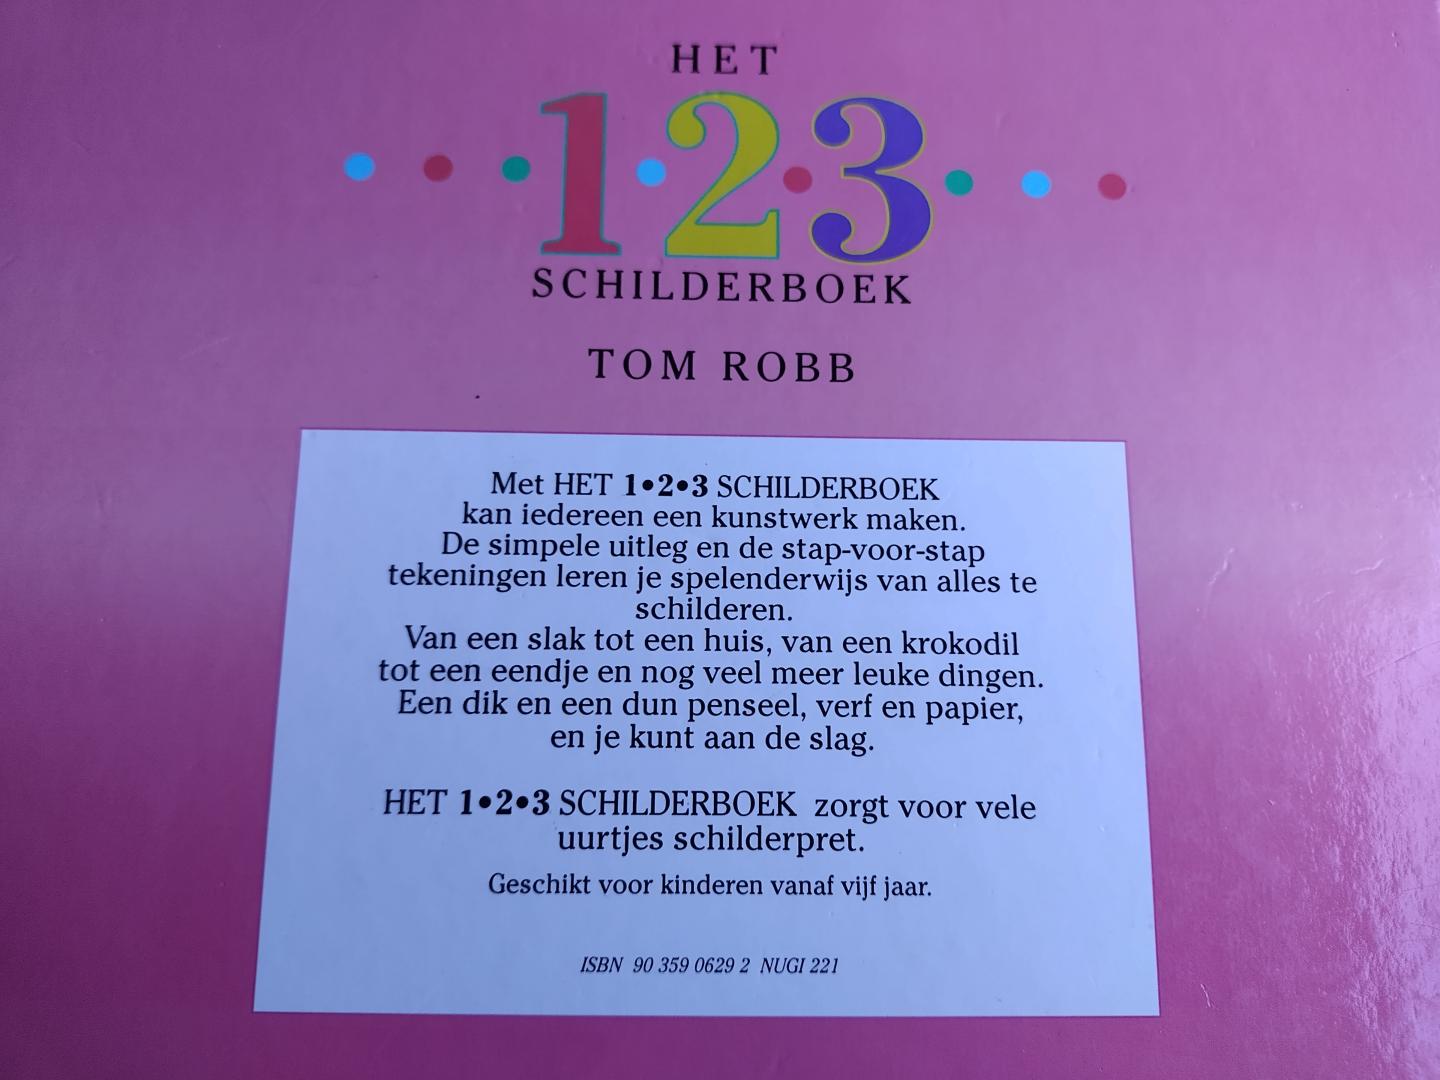 Robb, Tom - 1-2-3 schilderboek